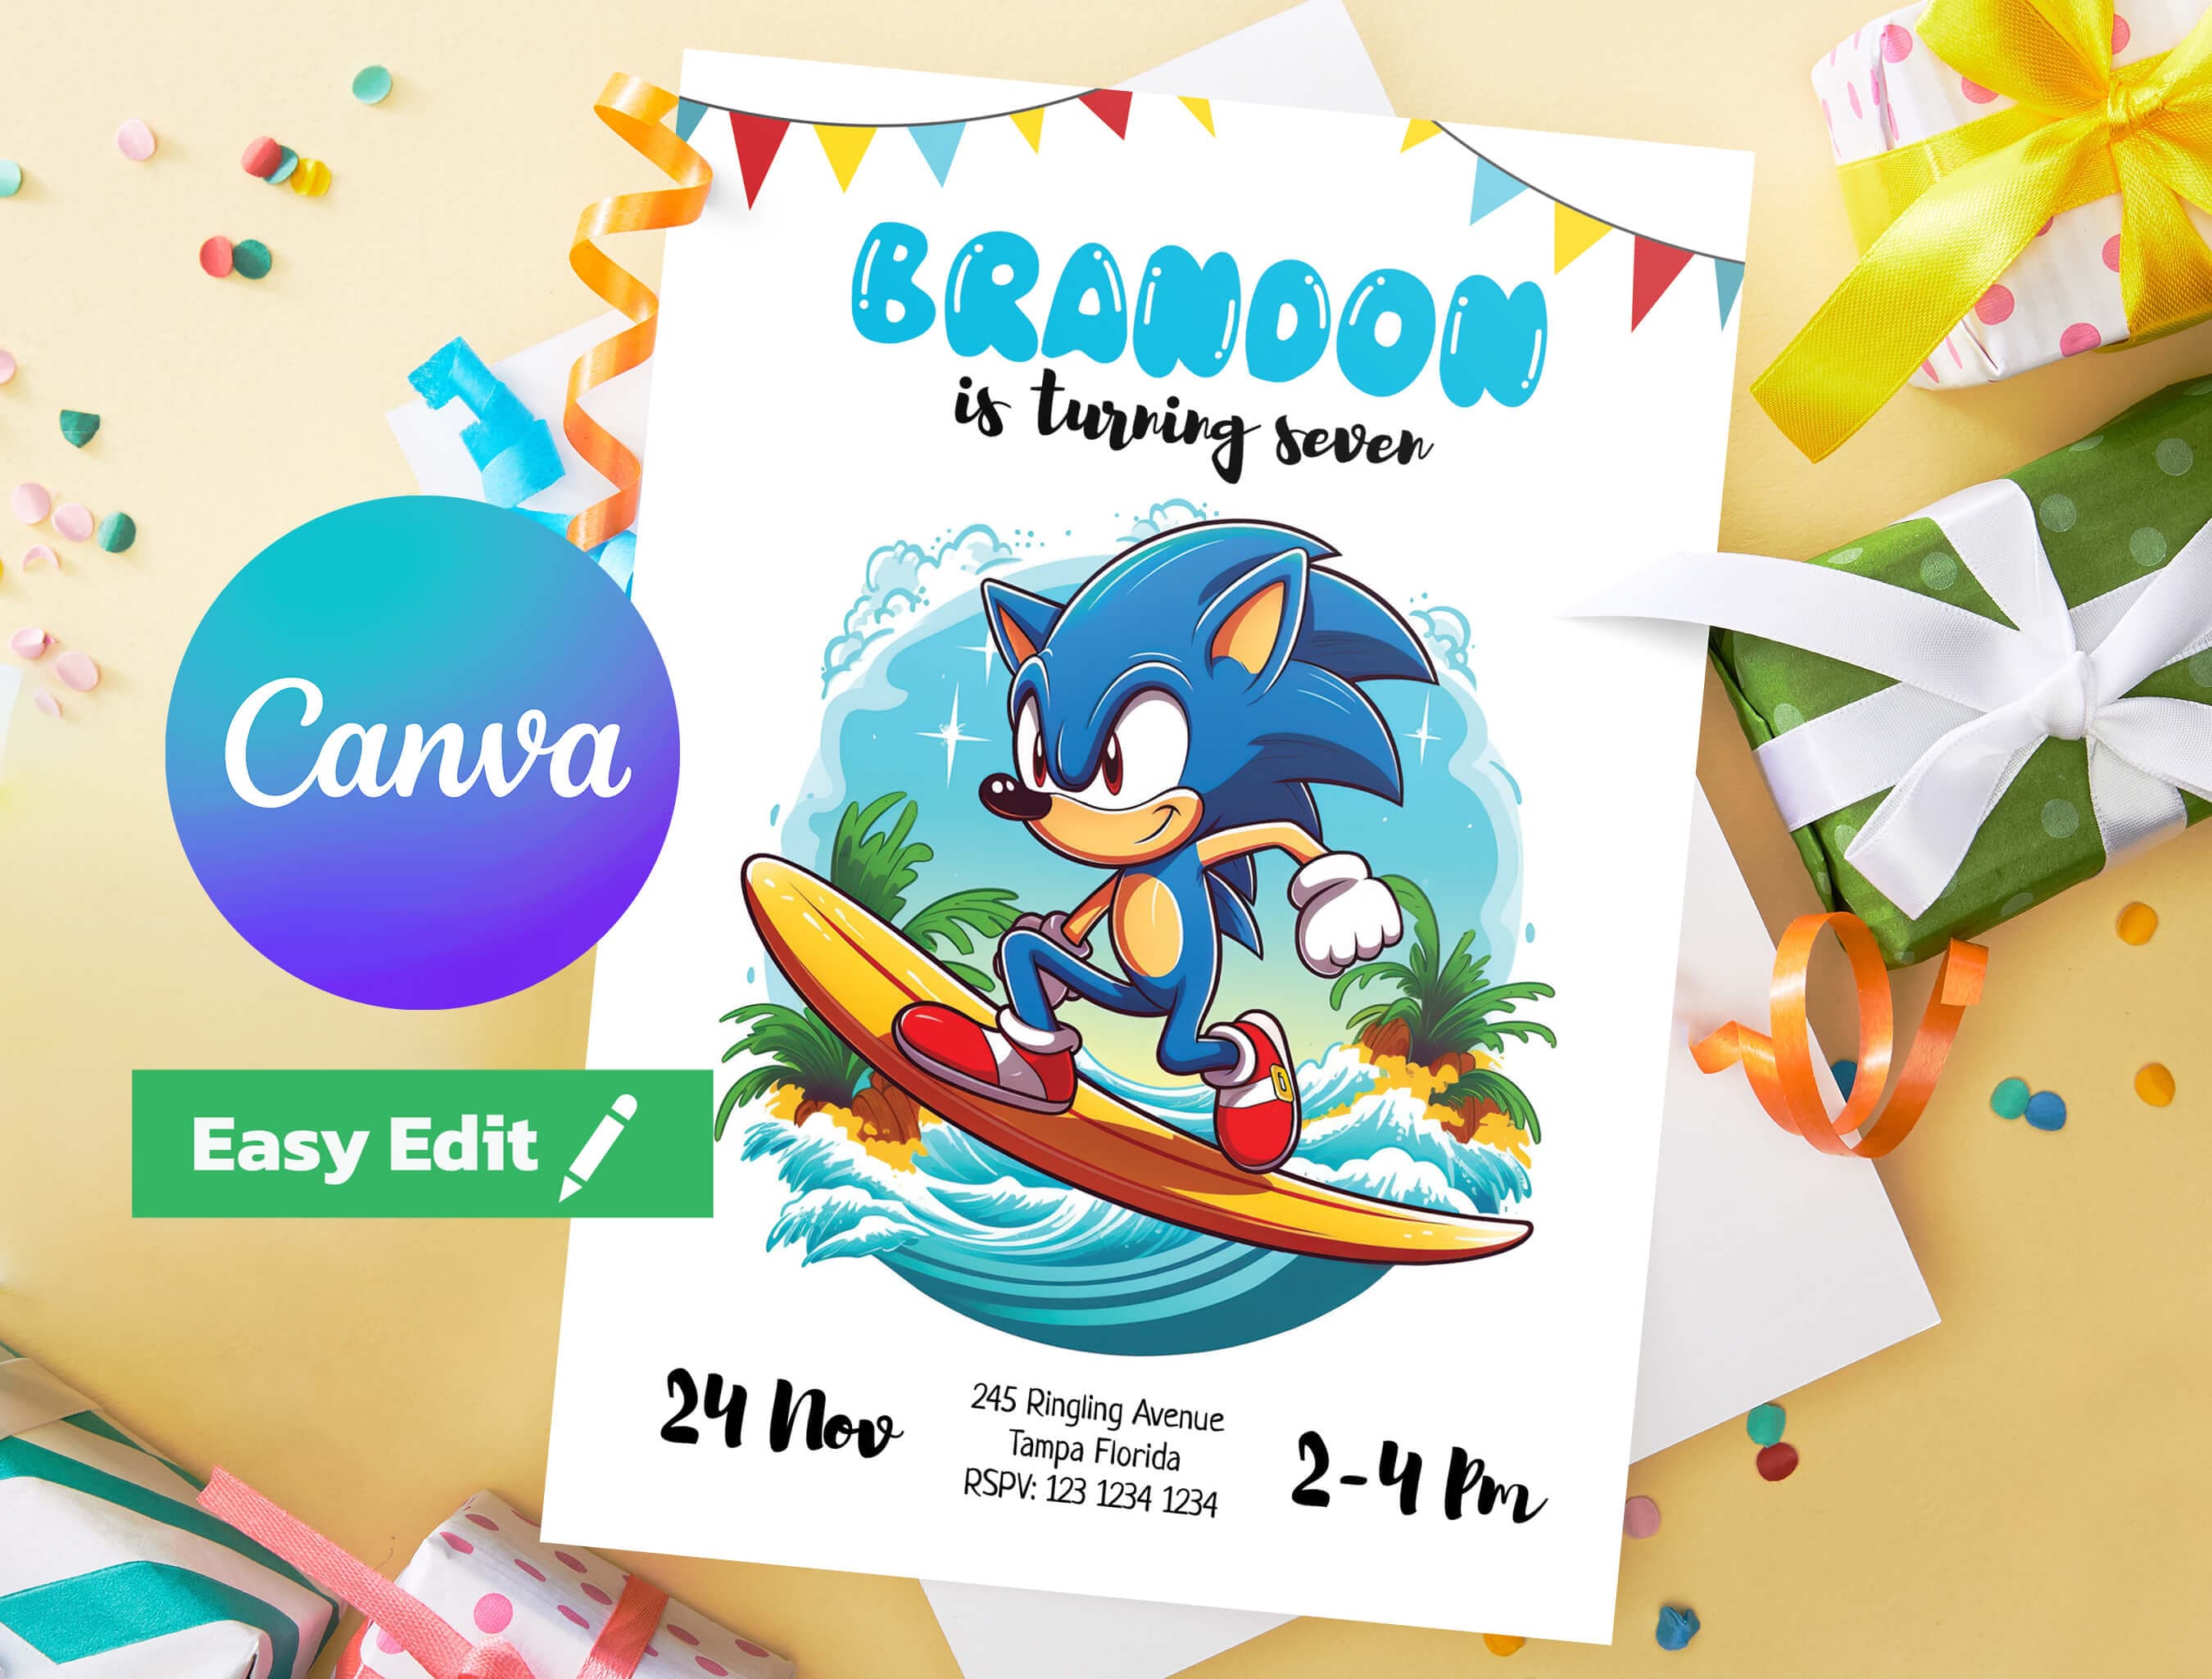 Convite aniversário Sonic - Edite grátis com nosso editor online